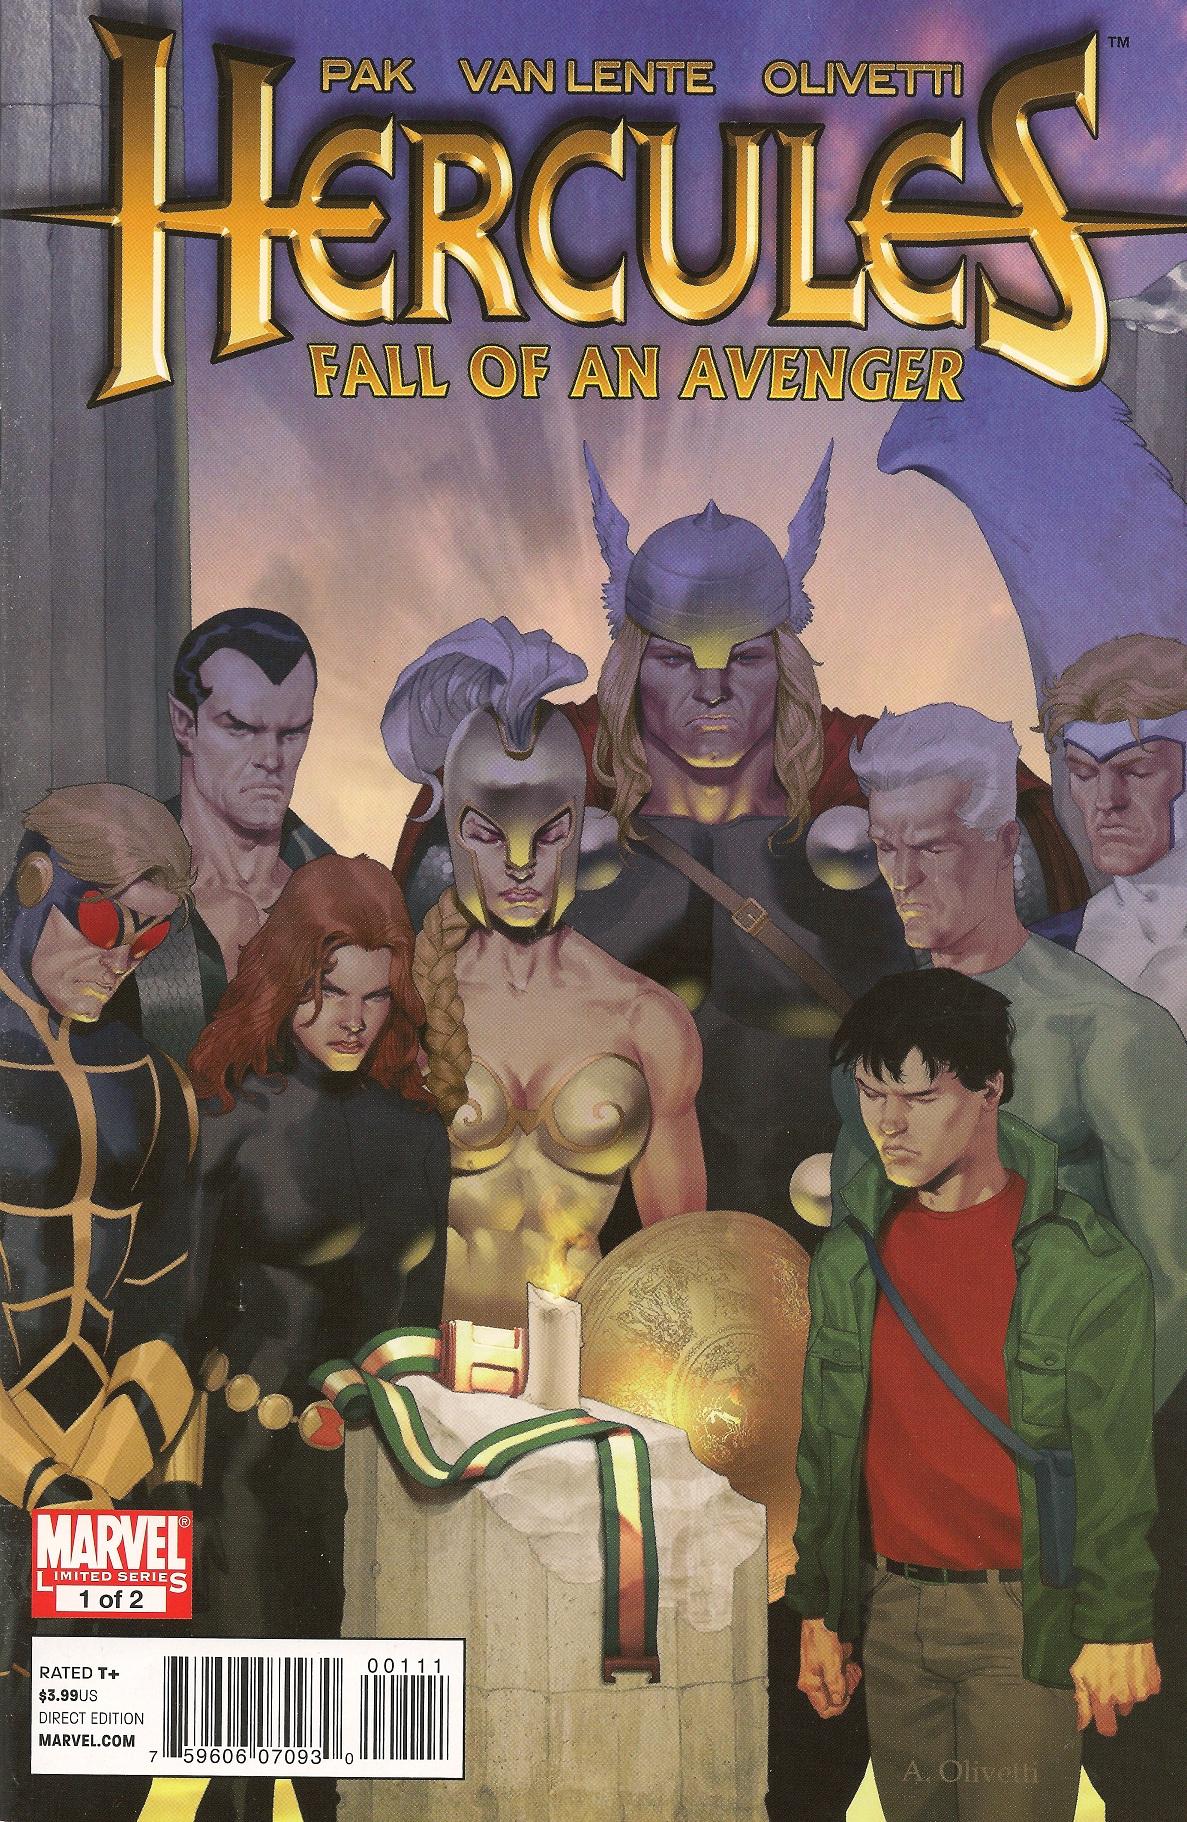 Hercules: Fall of An Avenger Vol. 1 #1